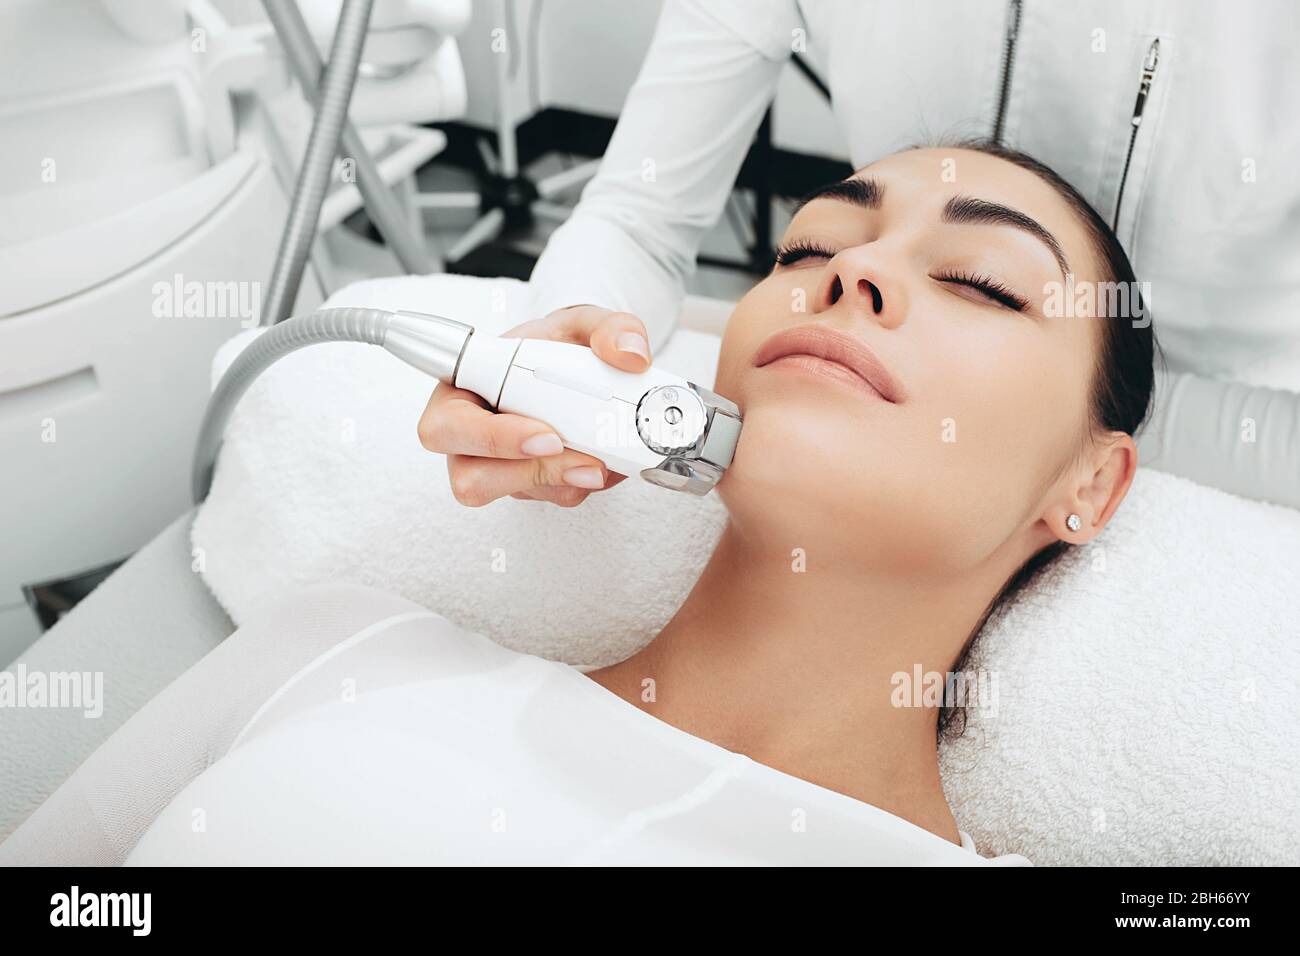 Il cosmetologo che utilizza un apparecchio di massaggio facciale leviga le rughe del viso, leviga il microrelief della pelle. I contorni del viso diventano più chiari Foto Stock